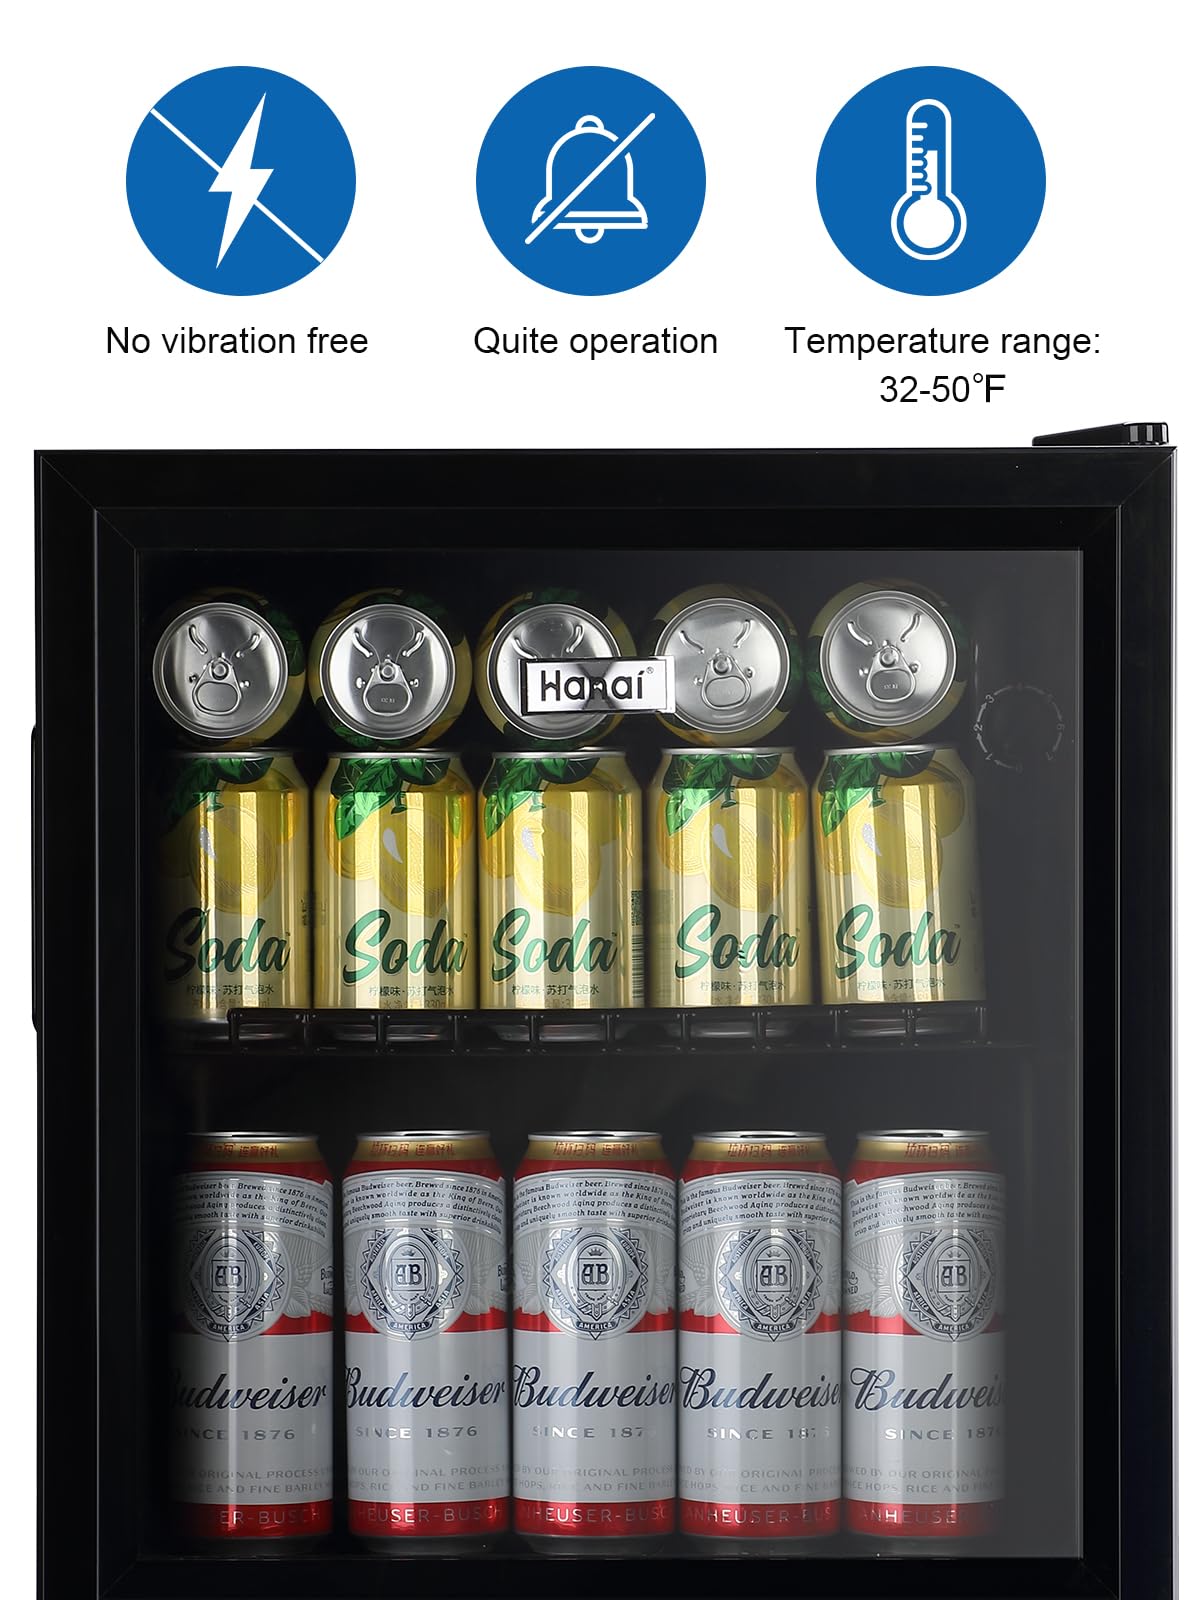 Beverage Refrigerator Cooler 60 Can Cooler Fridge Glass Door for Beer Drinks Wines Juice, 1.6 Cu. Ft Adjustable Shelves Blue LED Lights and User Friendly Temperature Knob for Home Office Dorm Bar